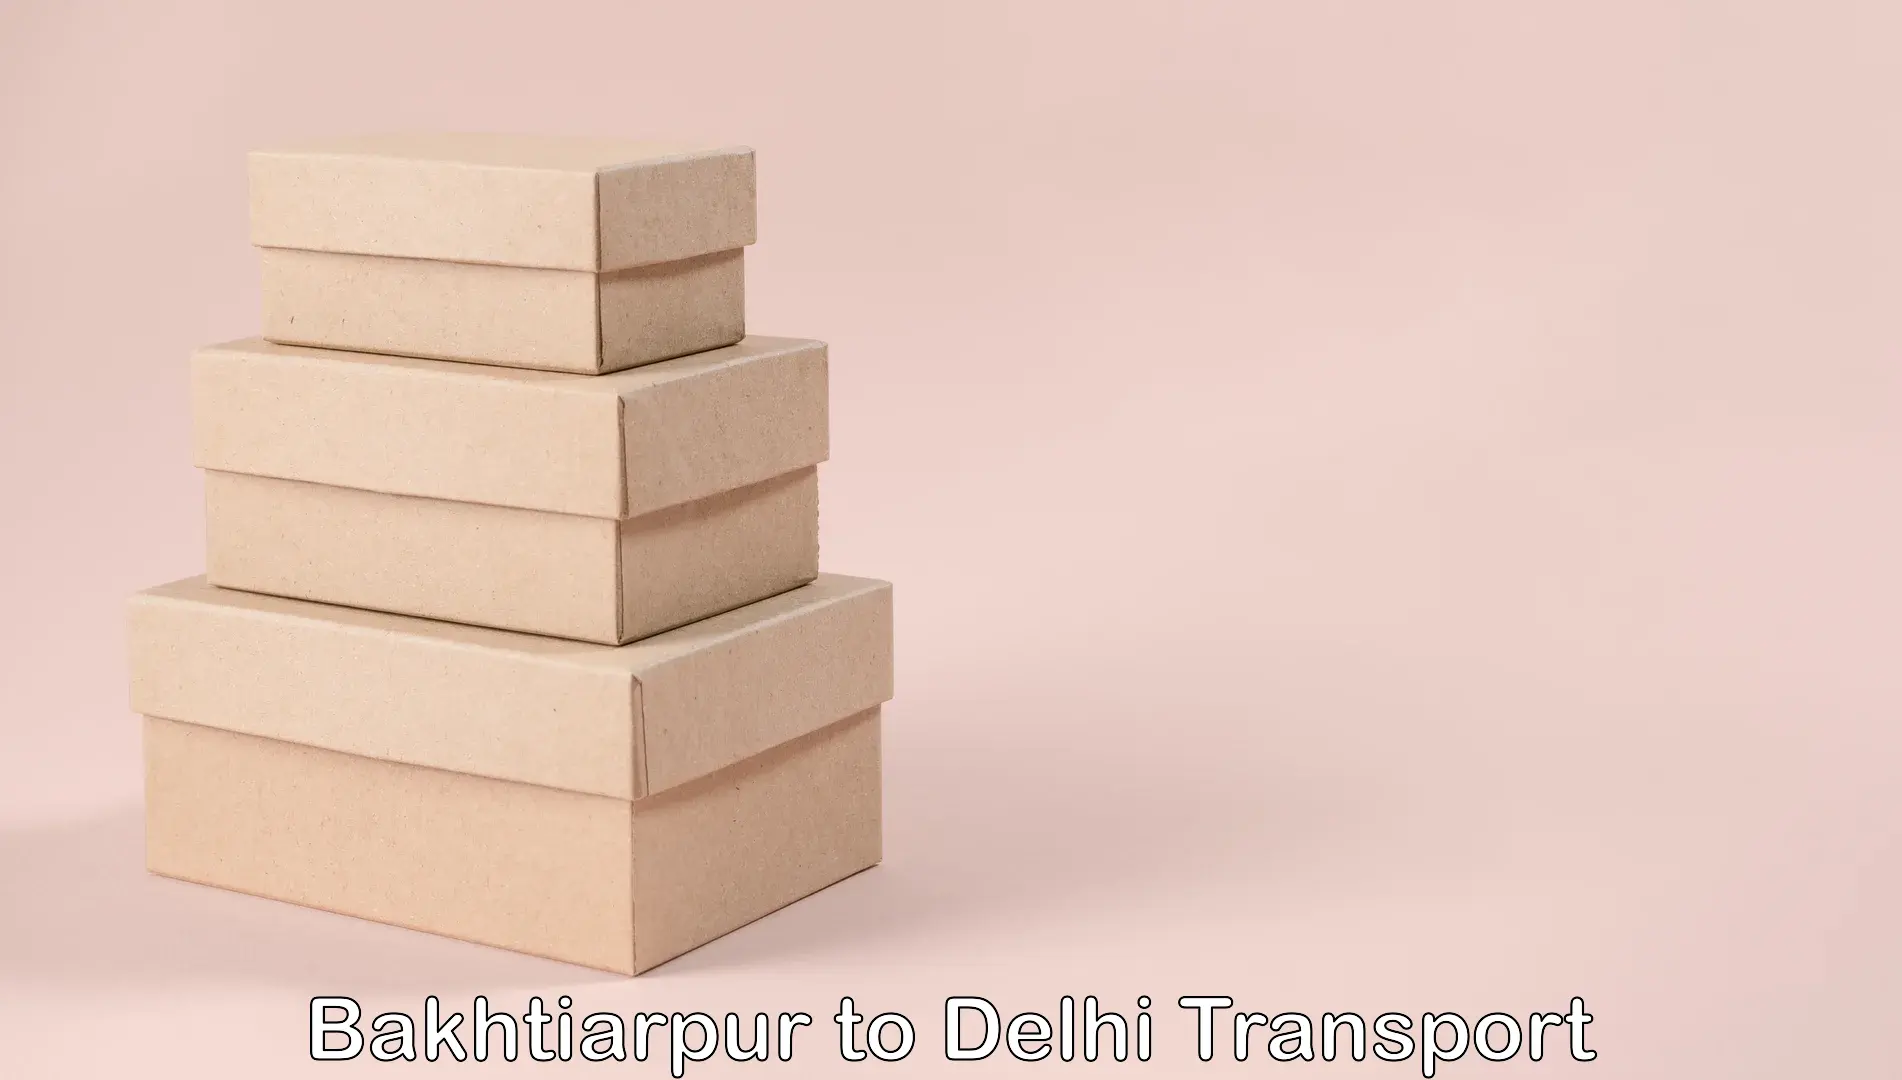 Road transport online services Bakhtiarpur to IIT Delhi